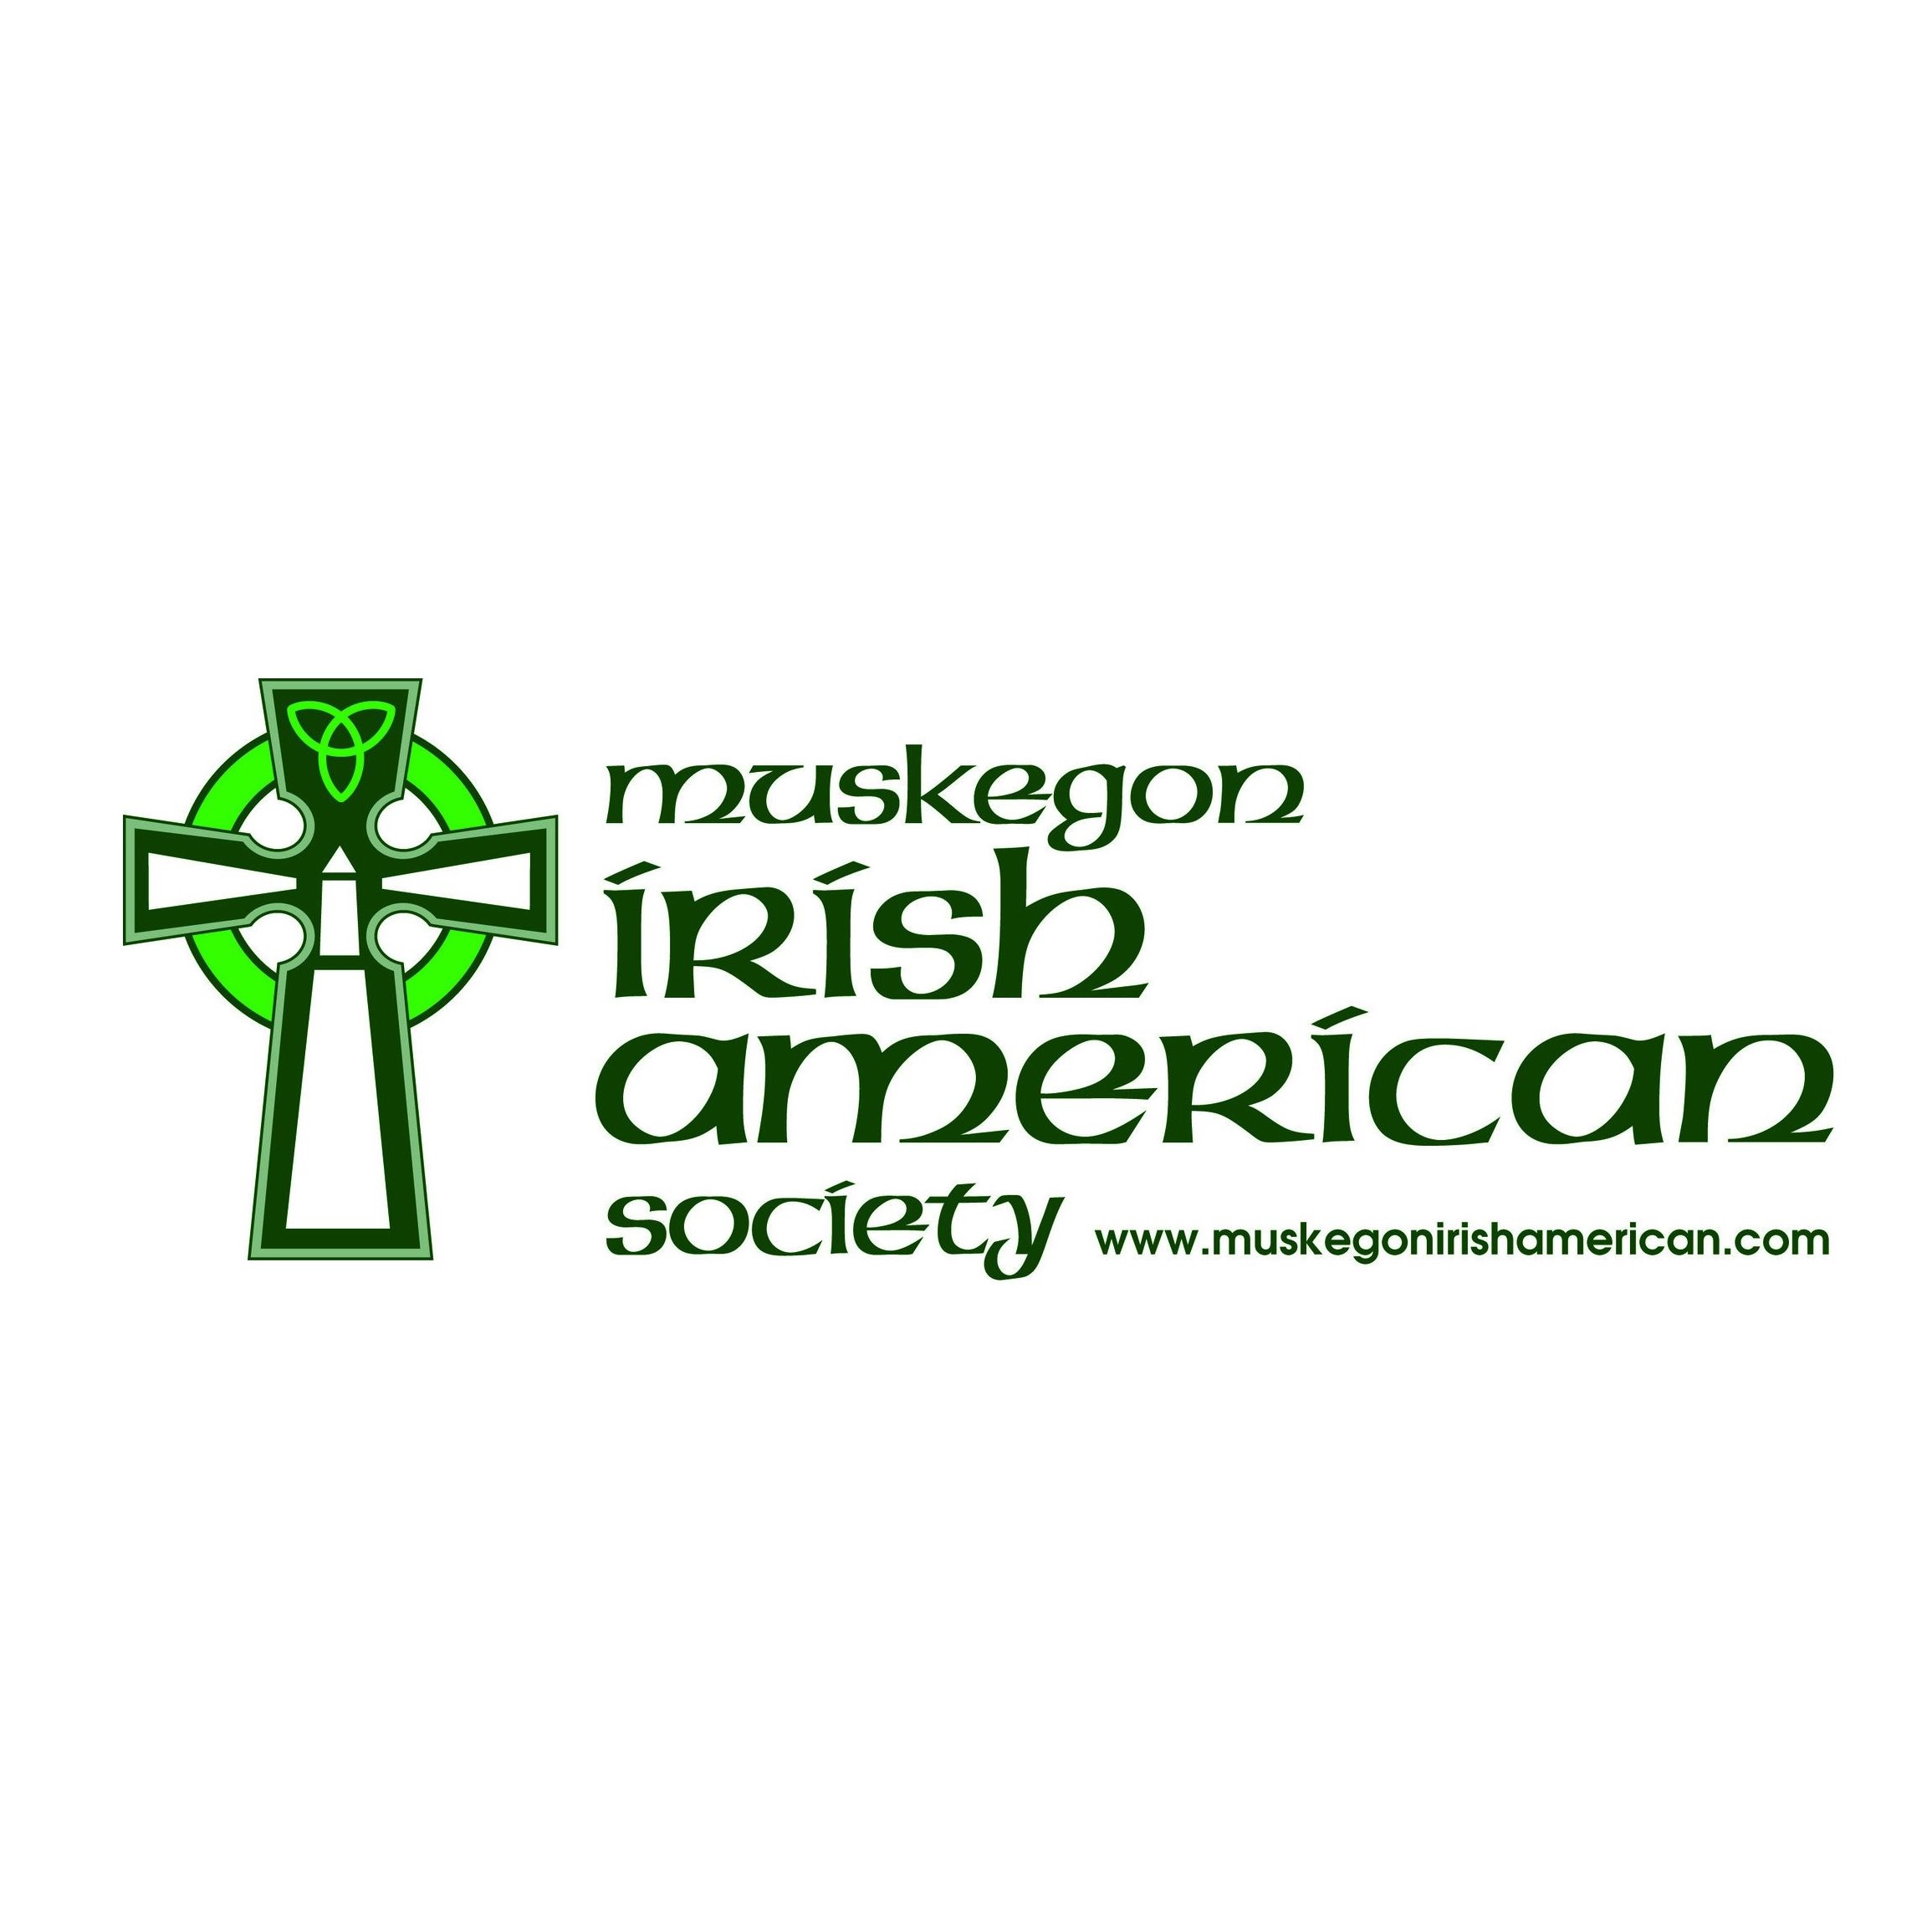 The Muskegon Irish American Society - Irish organization in Muskegon MI